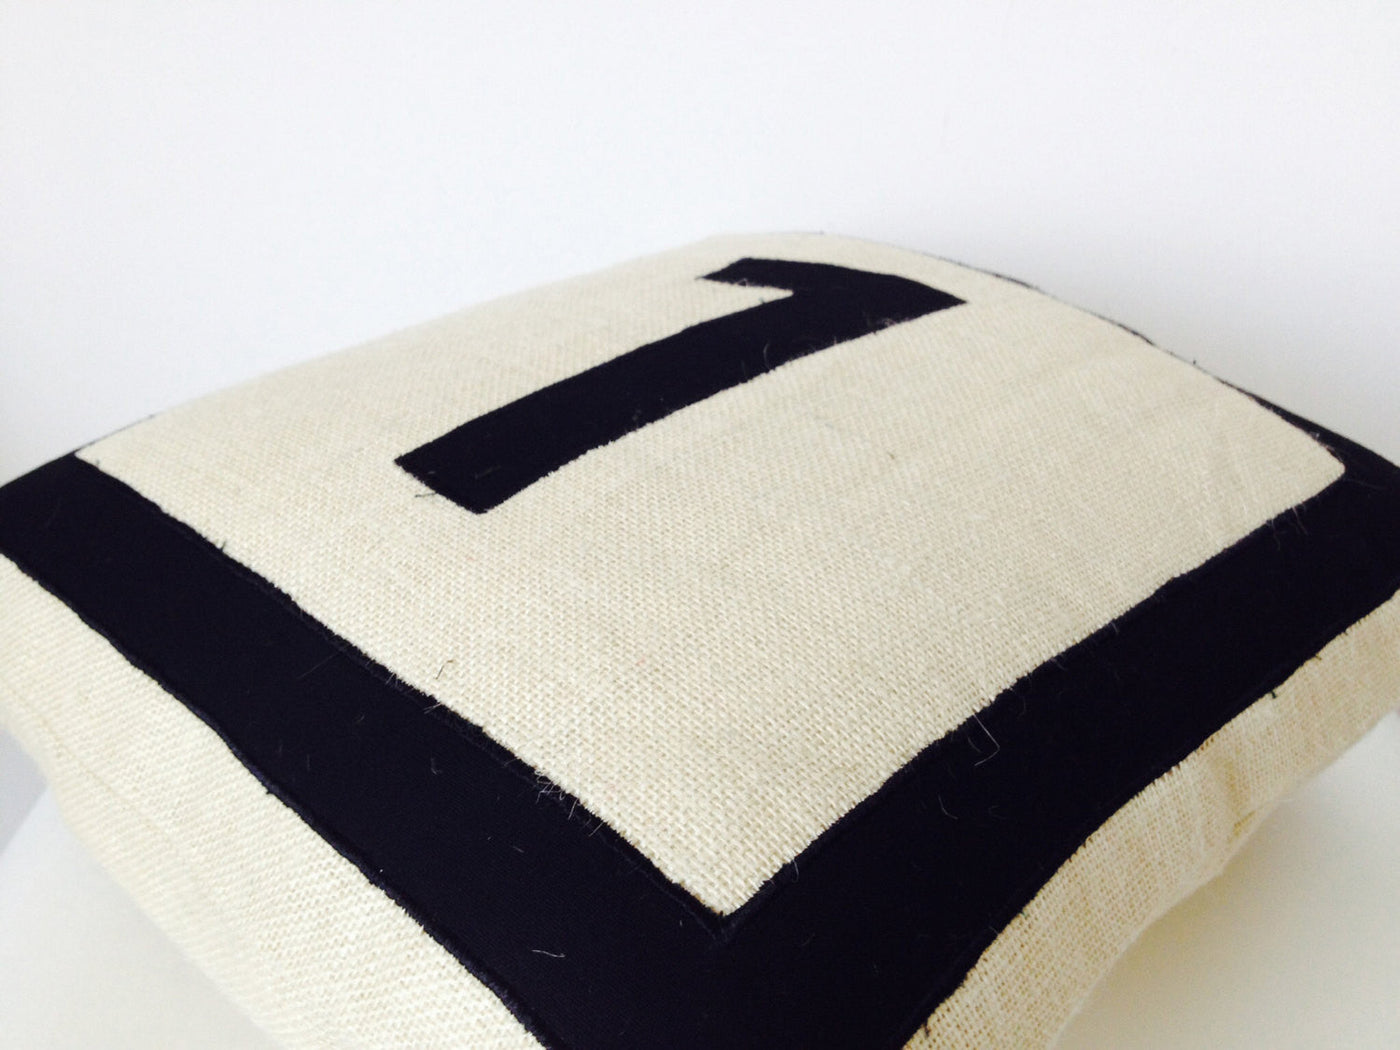 Personalized Monogram throw pillow- Burlap pillows- Black monogram cushion -applique -initial pillow -Decorative pillow covers- 16x16 pillow by Amore Beauté